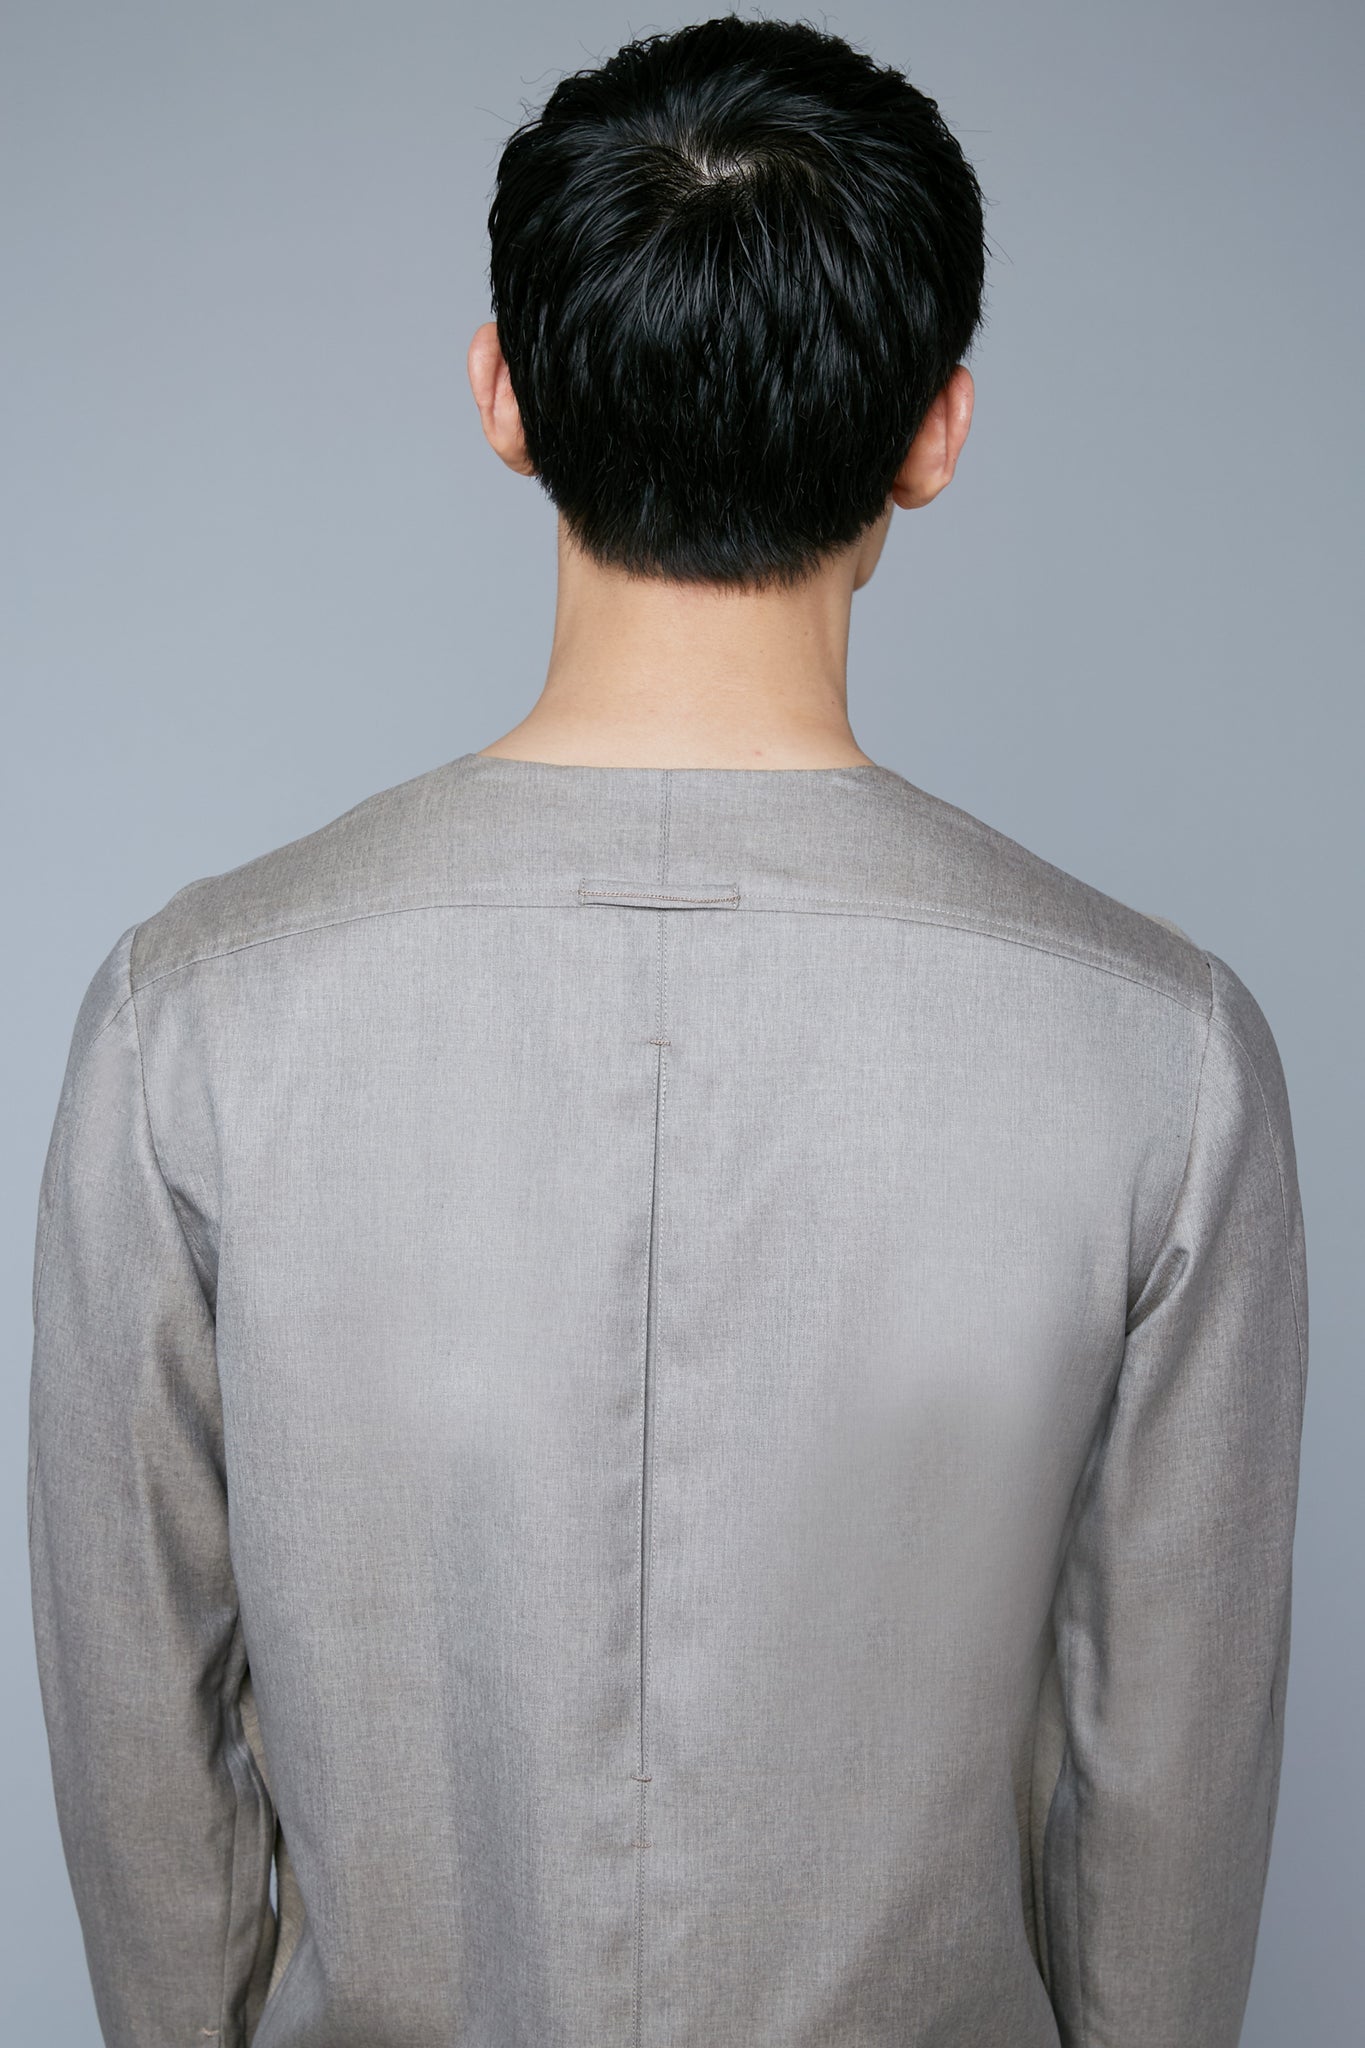 Back View: Model Qiang Li wearing Woven Henley